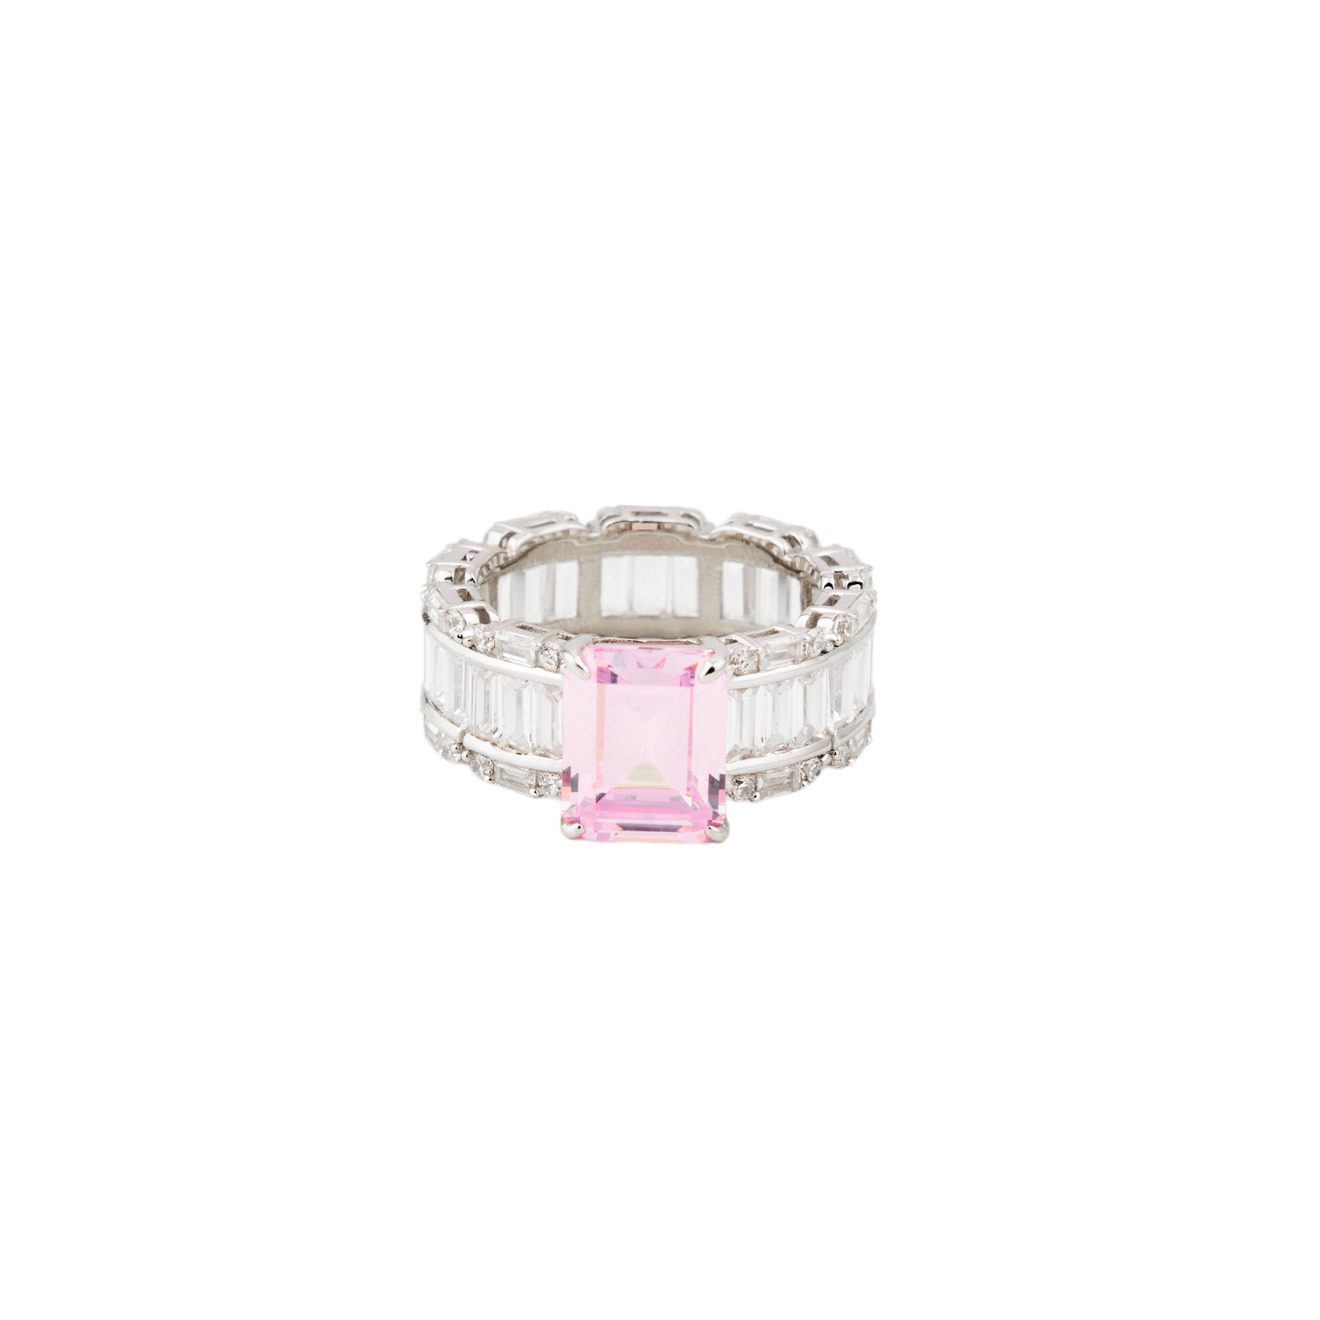 Holy Silver Кольцо из серебра с розовым кристаллом и паве из белых кристаллов огранки багет